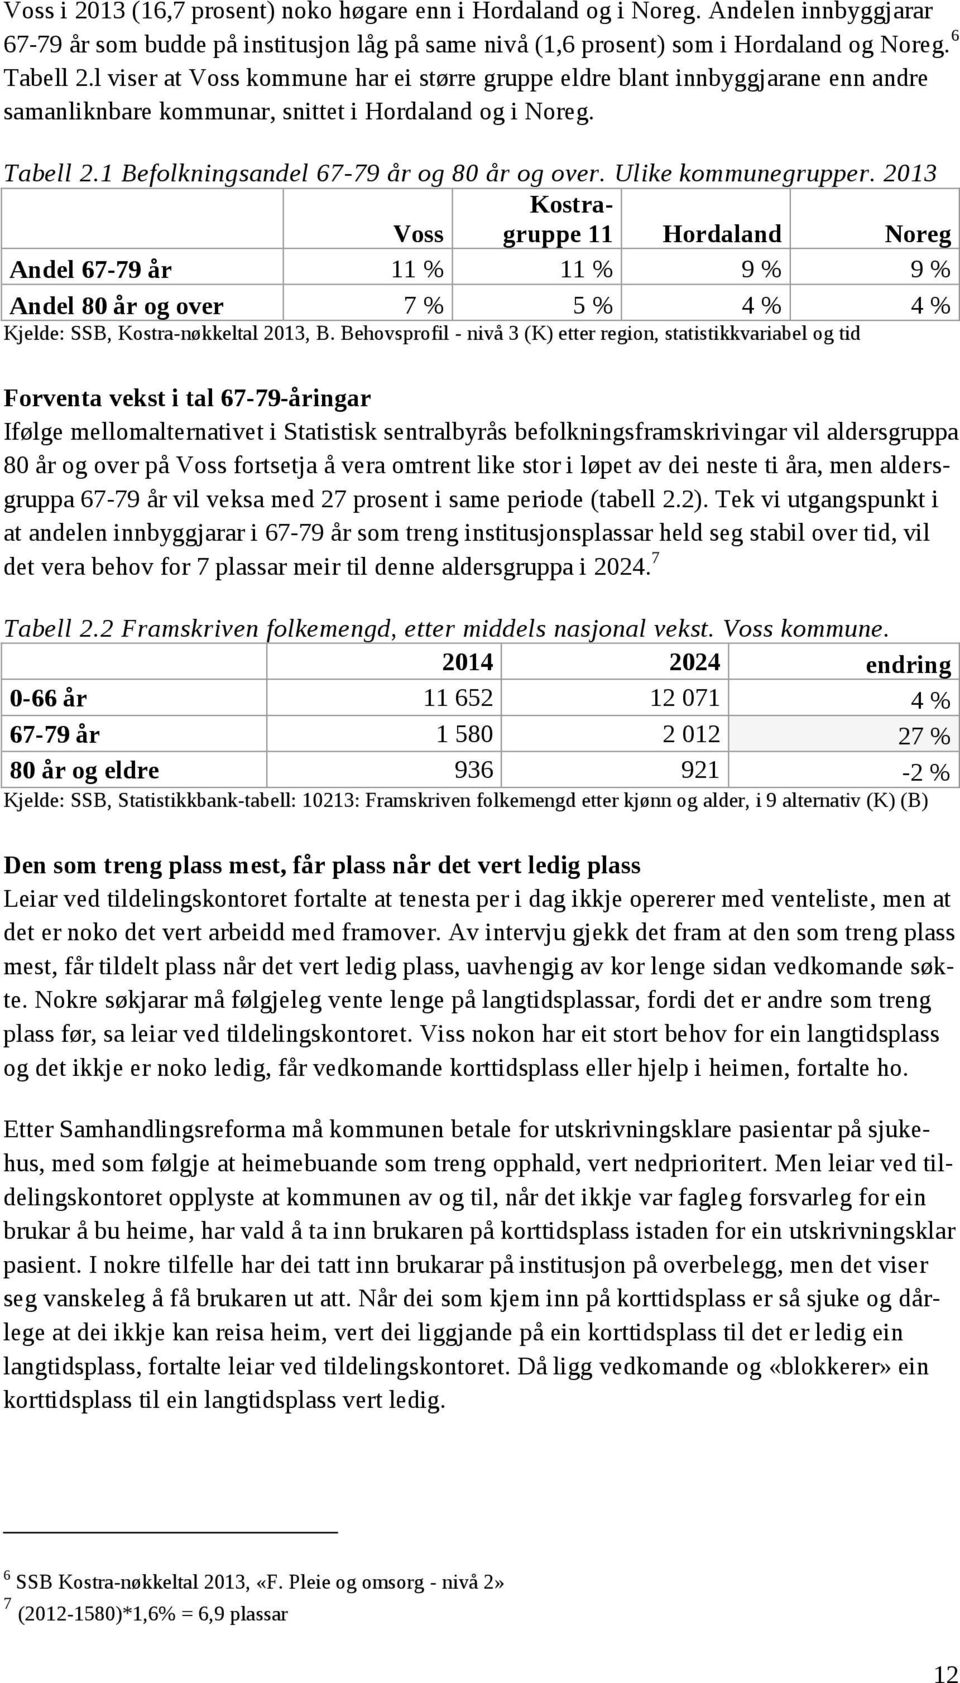 Ulike kommunegrupper. 2013 Kostra- Voss gruppe 11 Hordaland Noreg Andel 67-79 år 11 % 11 % 9 % 9 % Andel 80 år og over 7 % 5 % 4 % 4 % Kjelde: SSB, Kostra-nøkkeltal 2013, B.